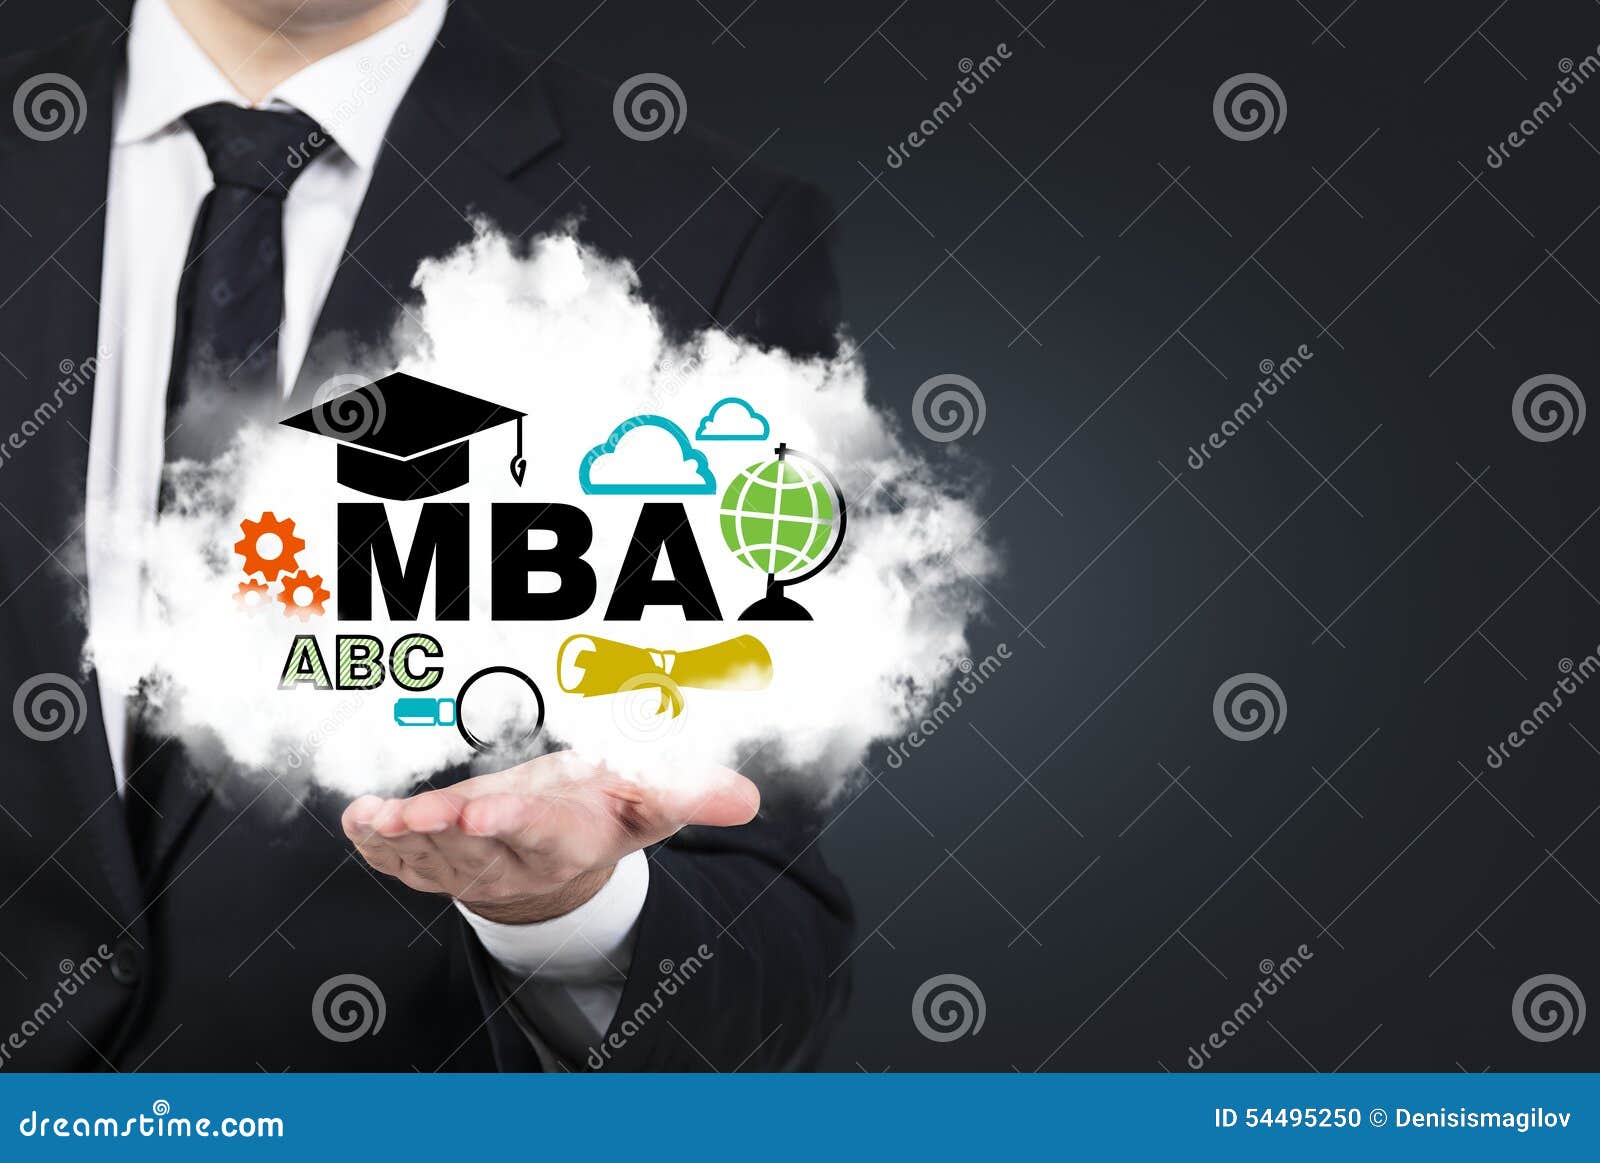 Мба россии. Бизнес-образование MBA. Курсы MBA. МВА. Mini MBA.